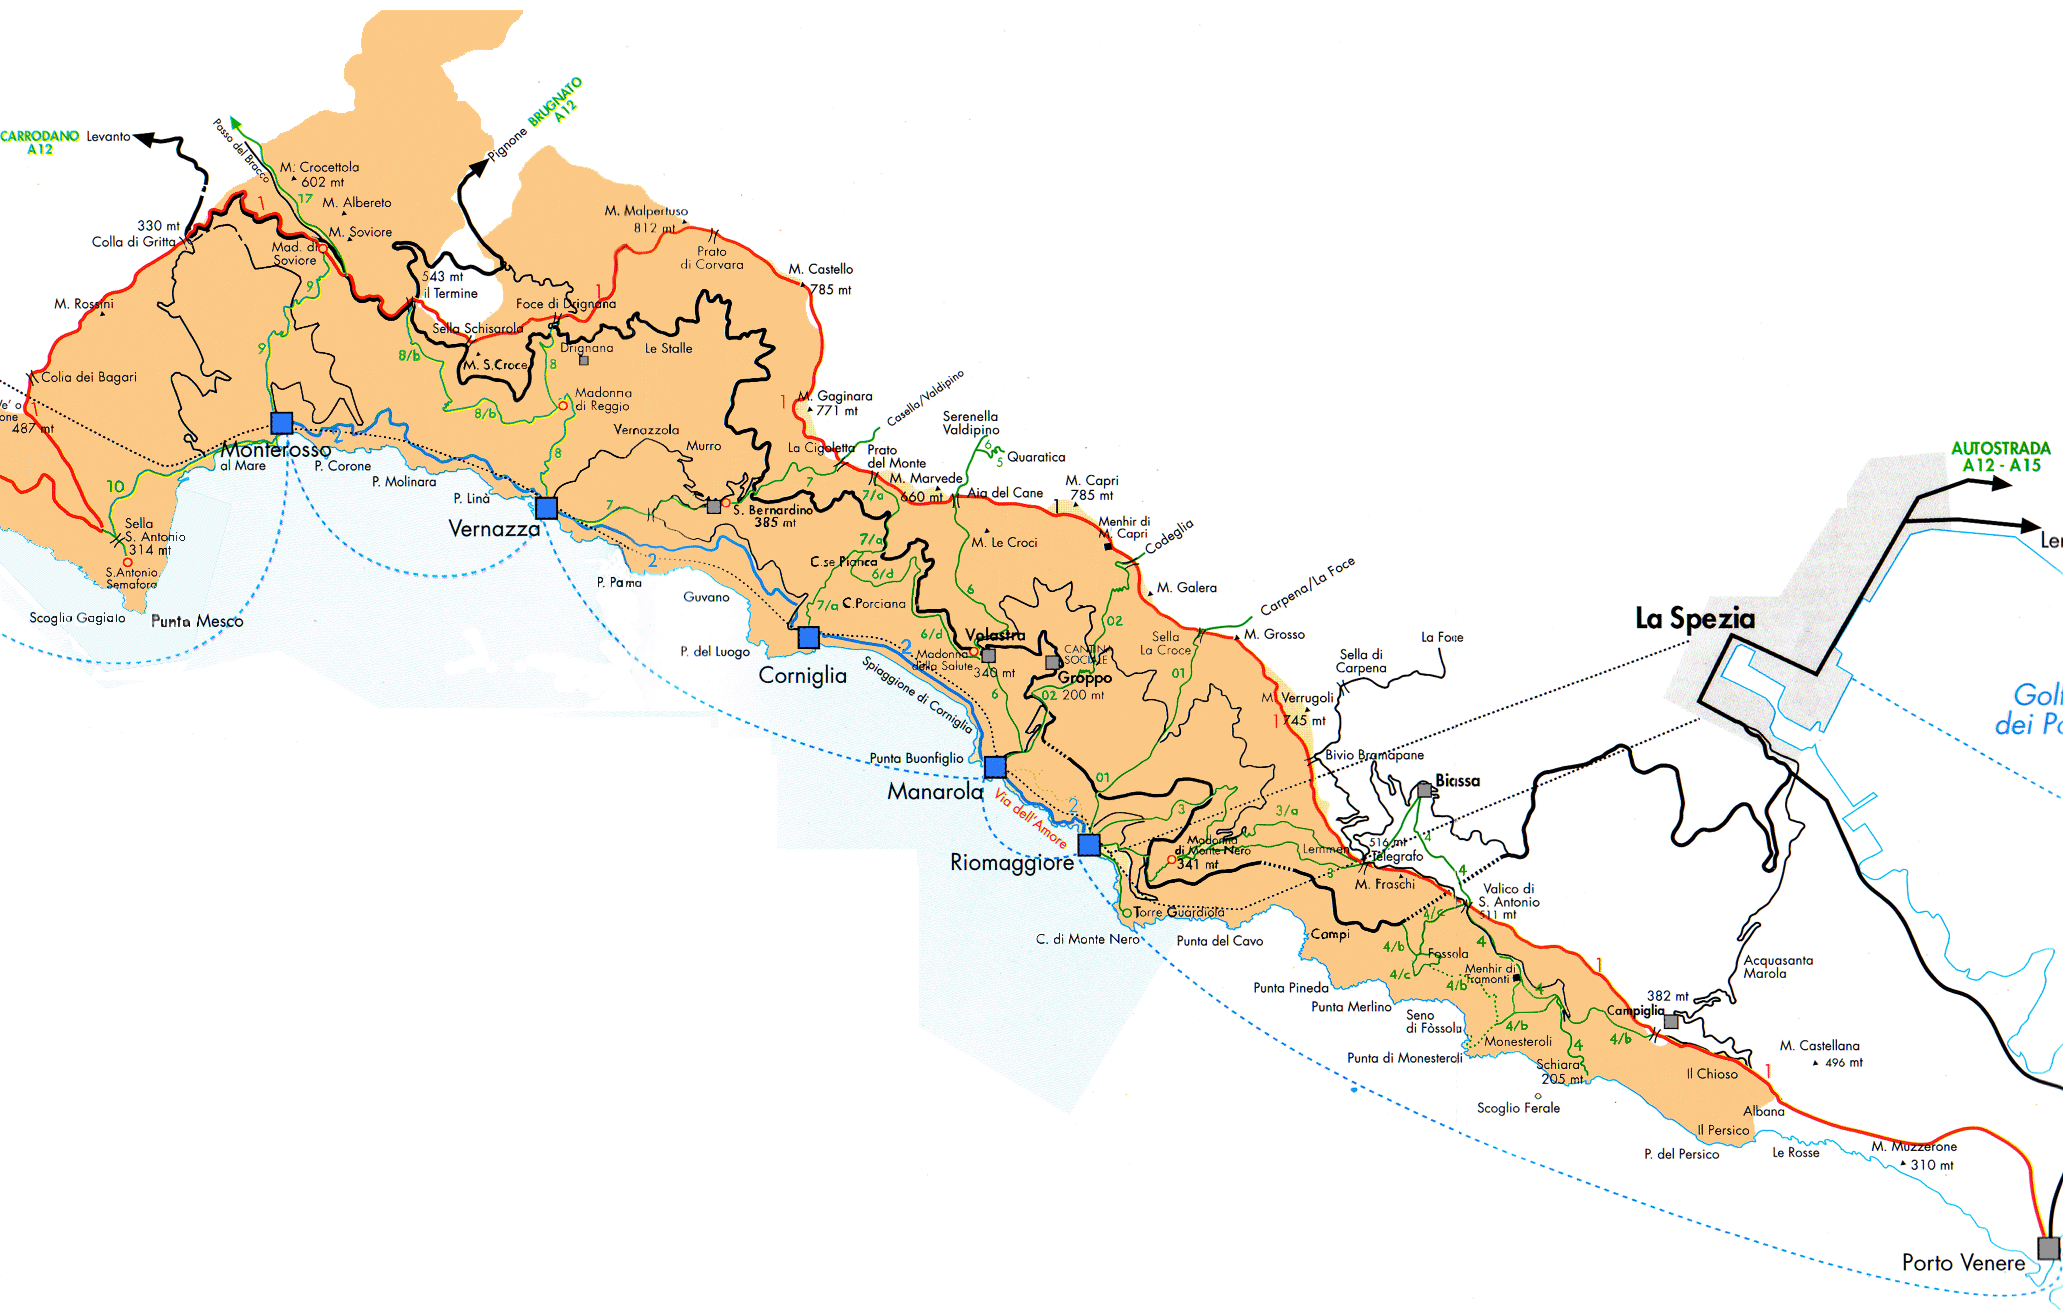 Mapa con el itinerario de Cinque Terre en Italia